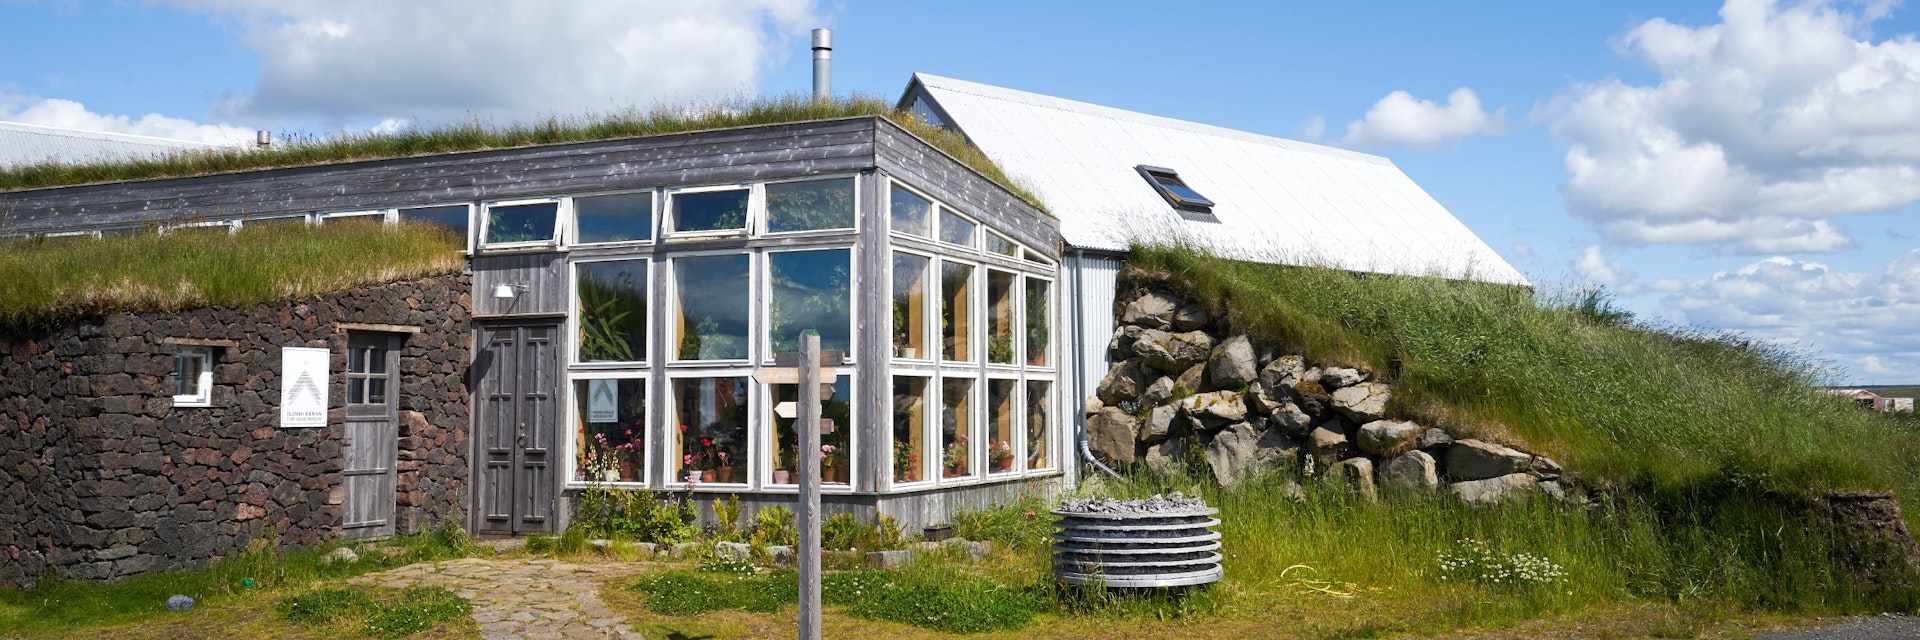 Turf House, Íslenski bærinn, exhibition on a farm near Selfoss, South Iceland